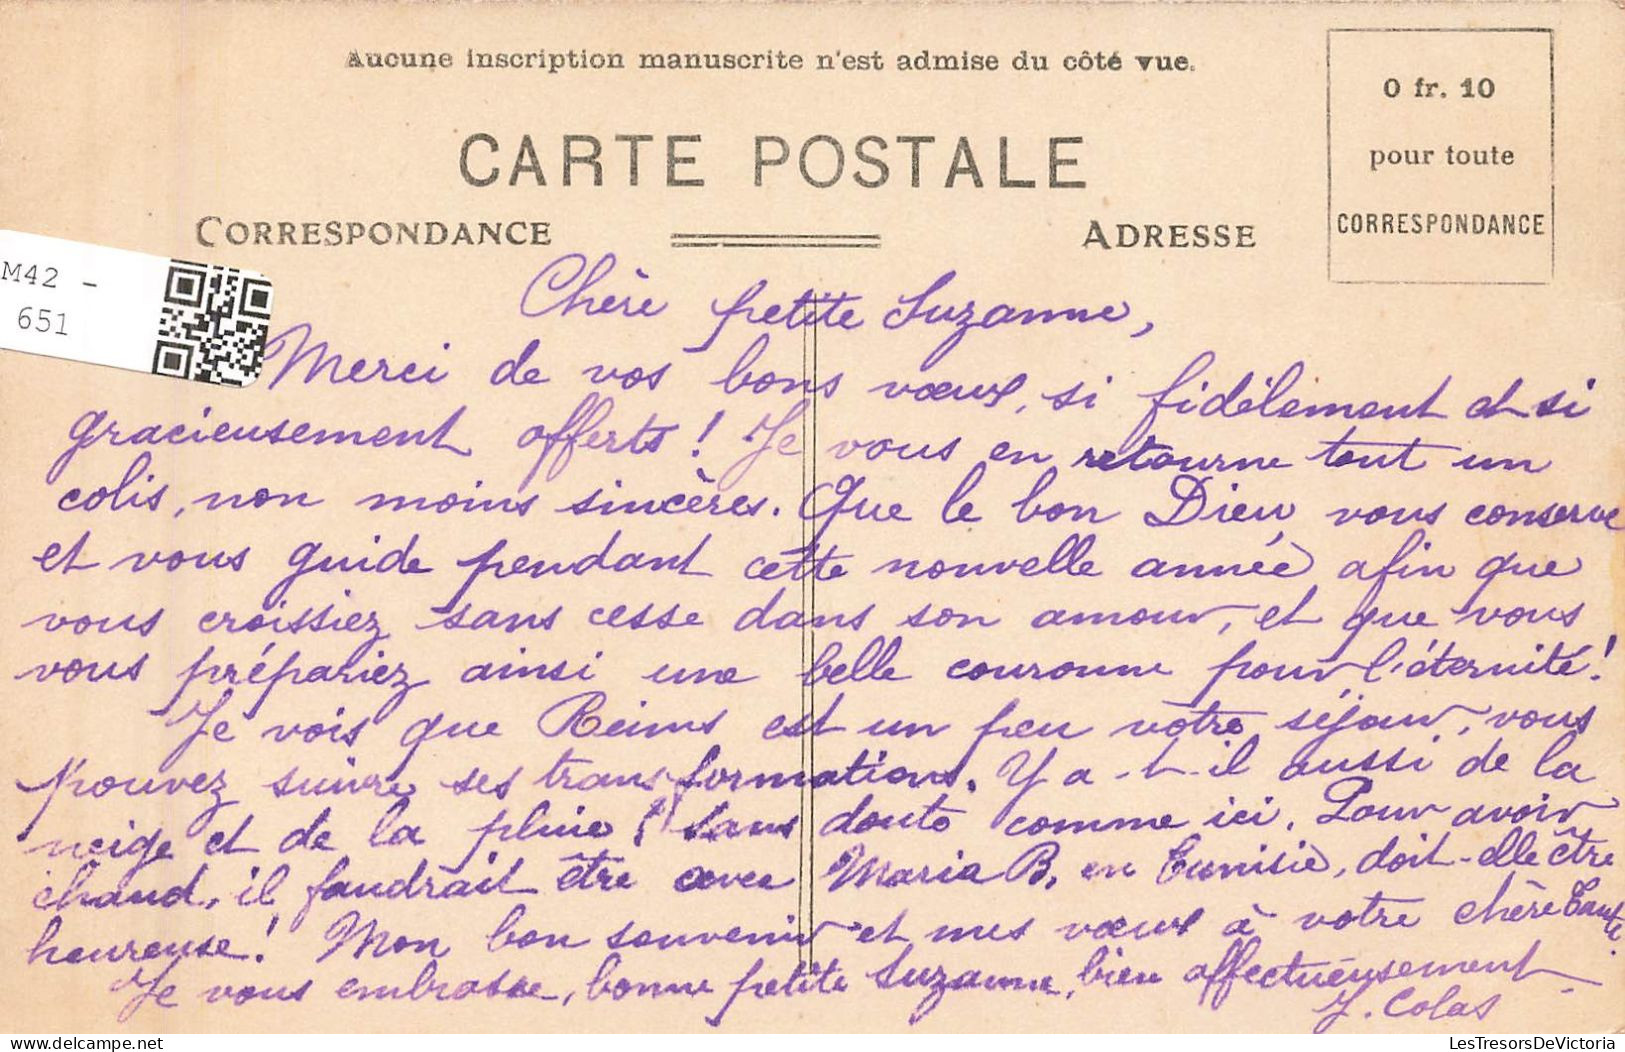 FRANCE - Corbigny - Institution De Jeunes Filles - Vue Sur La Chapelle - Vue à L'intérieur - Carte Postale Ancienne - Corbigny